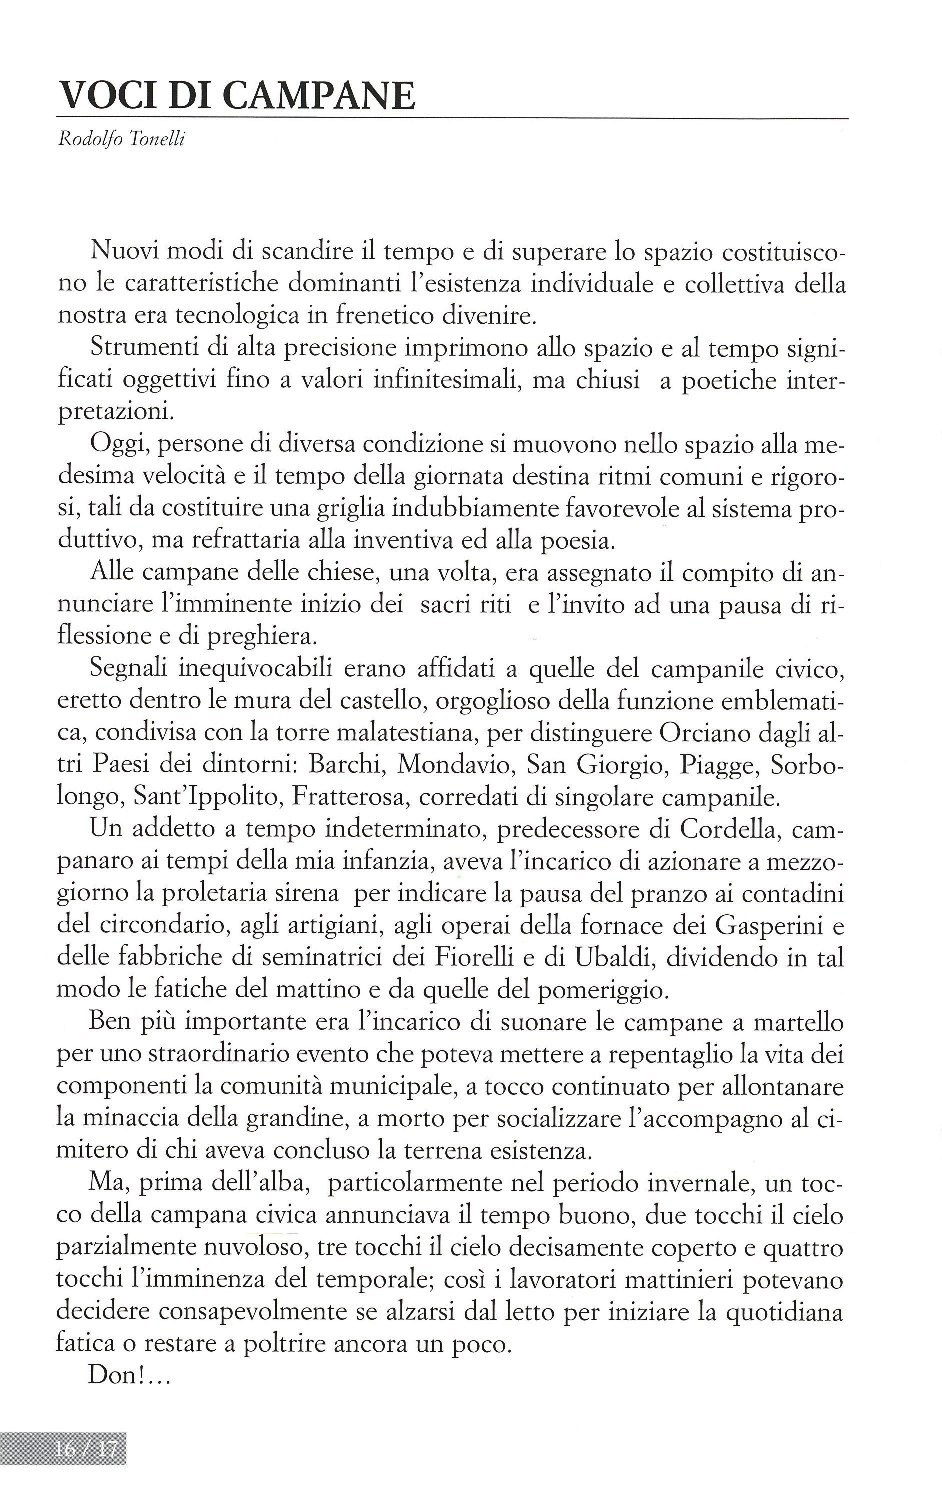 La torr i arduna tutti 2006 p.016